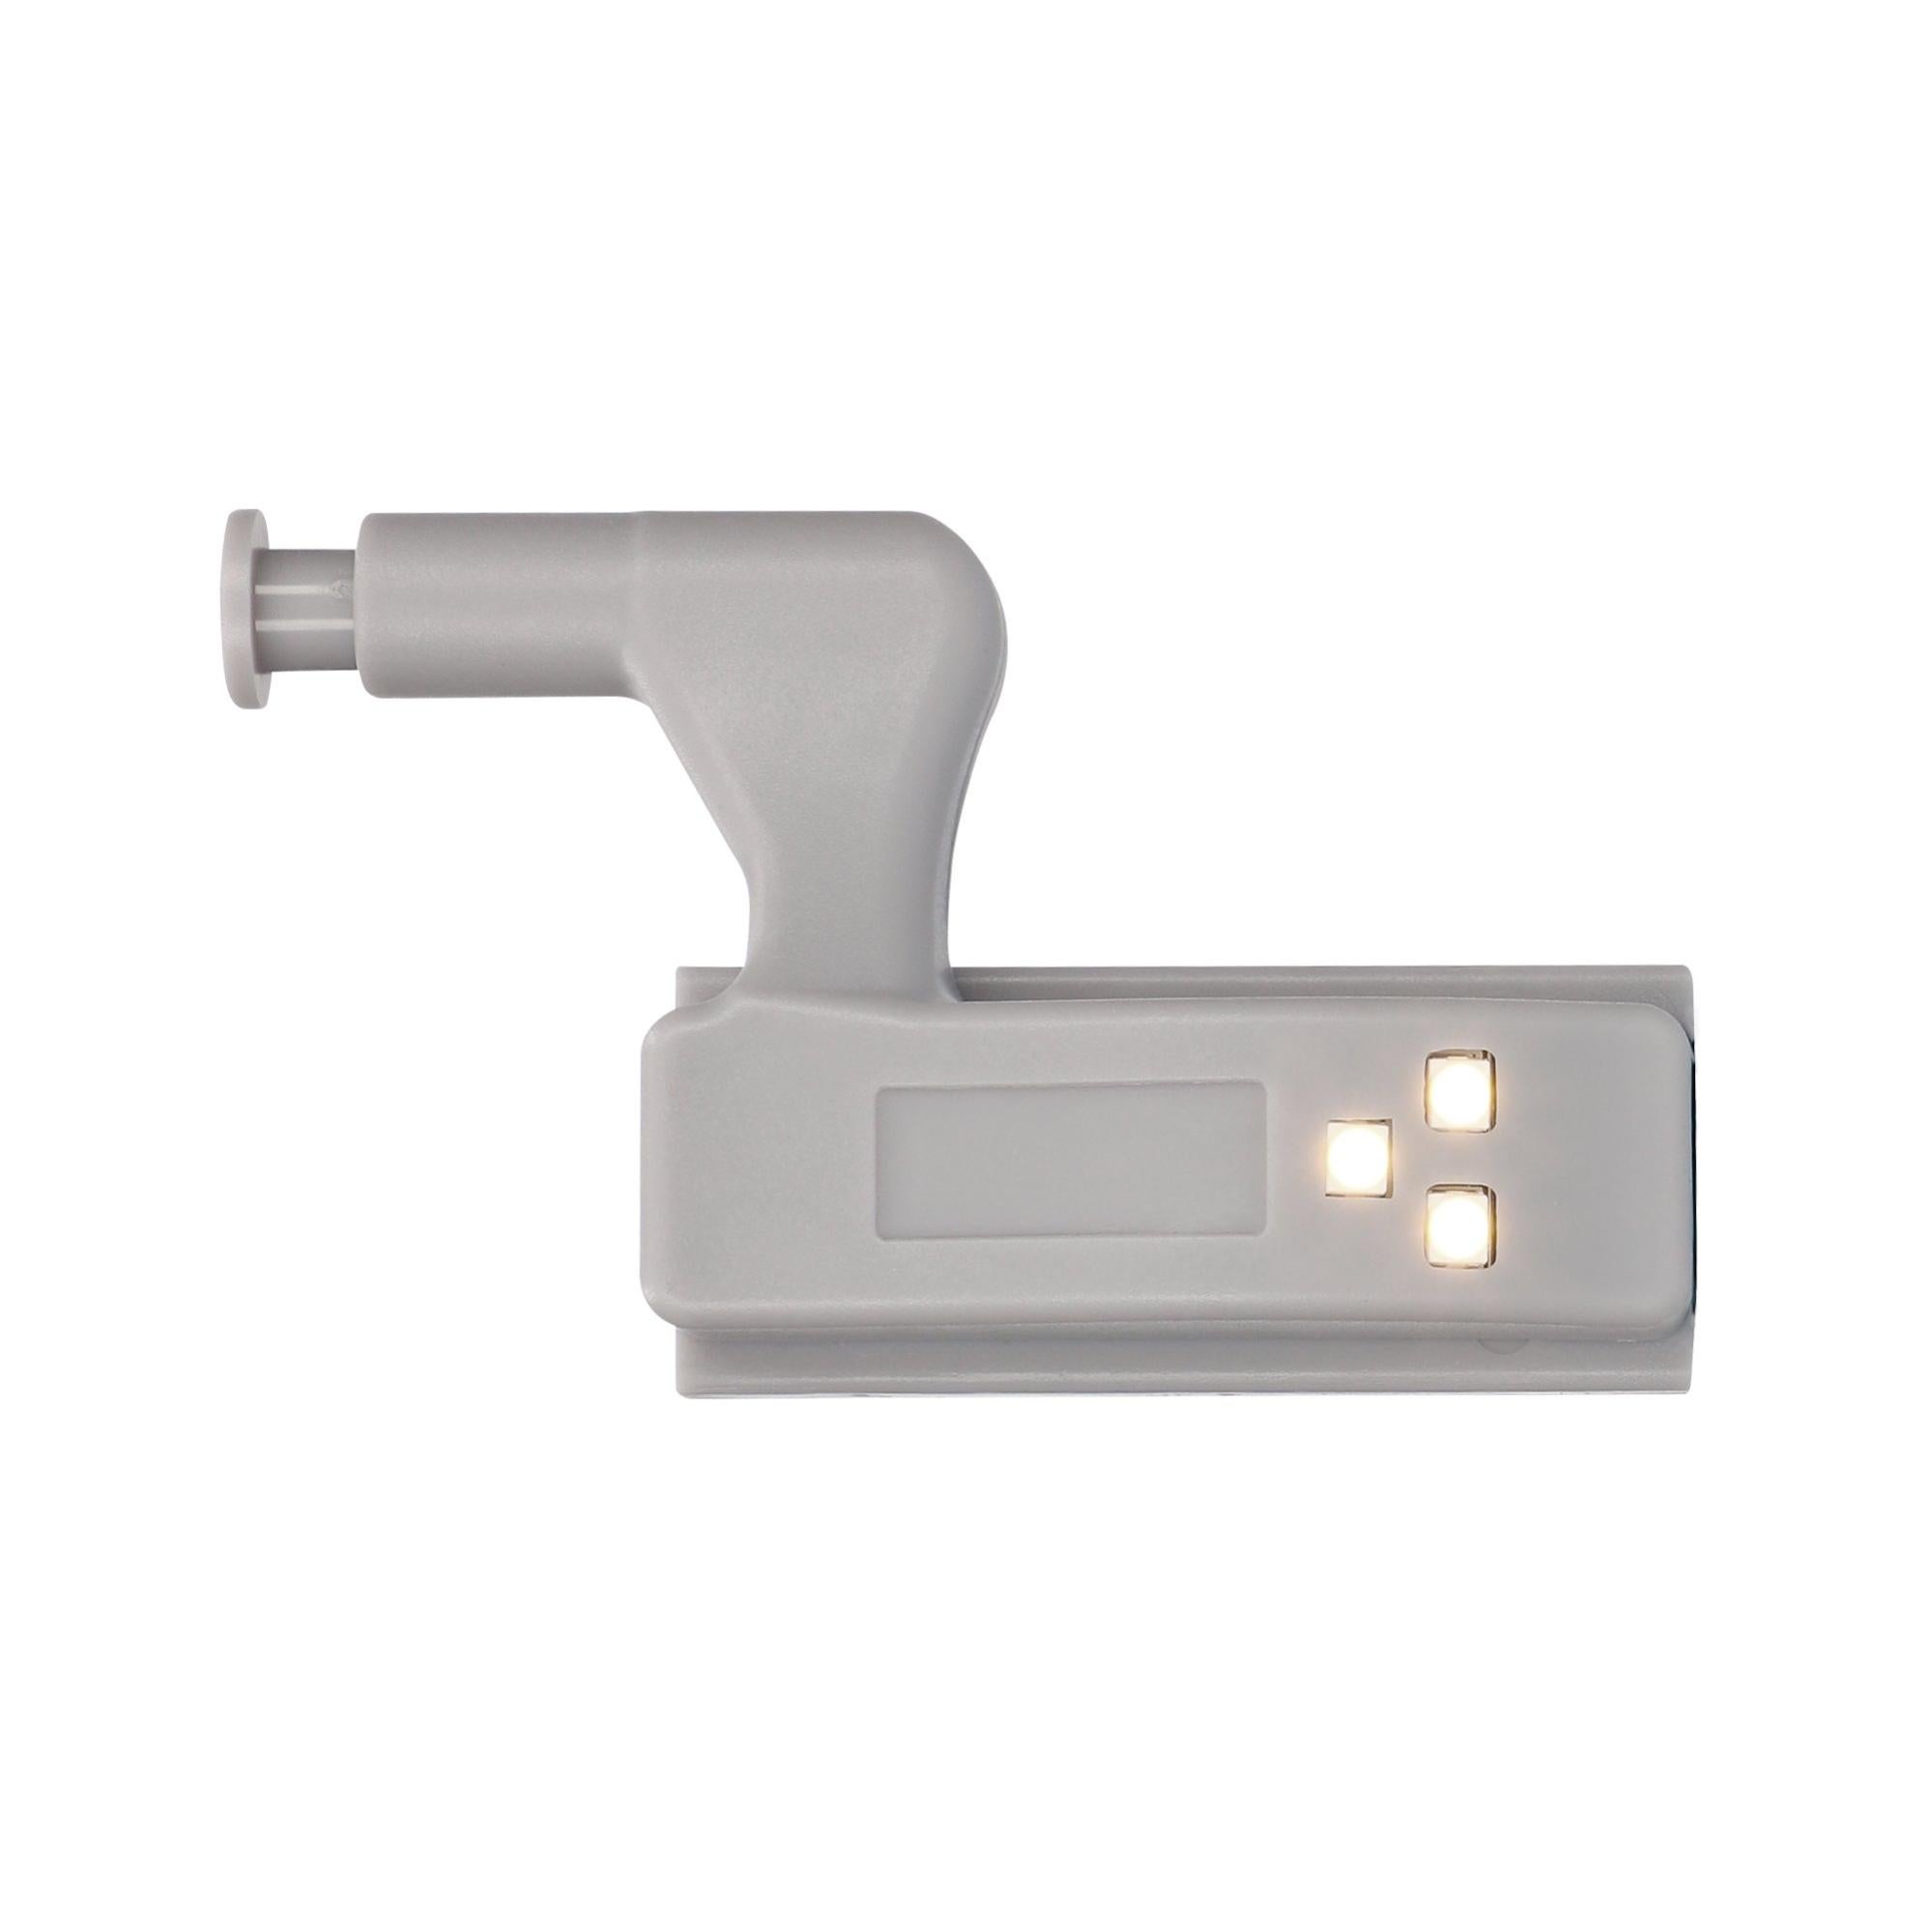 Kit de 4 luces led bisagra contact 0.5w gris a pilas